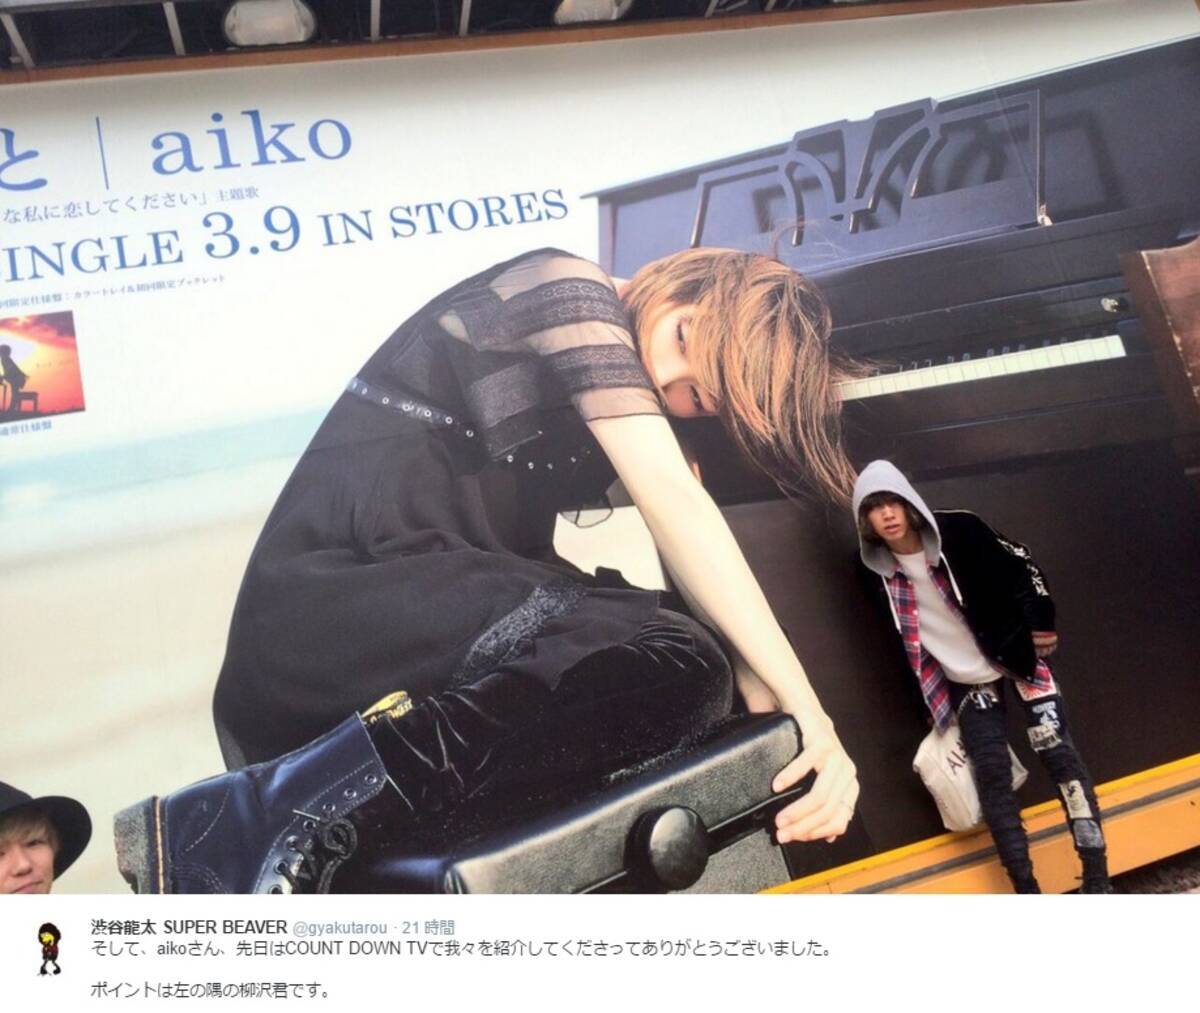 Aiko 自分の巨大看板に驚き 奇行種に見える 16年3月26日 エキサイトニュース